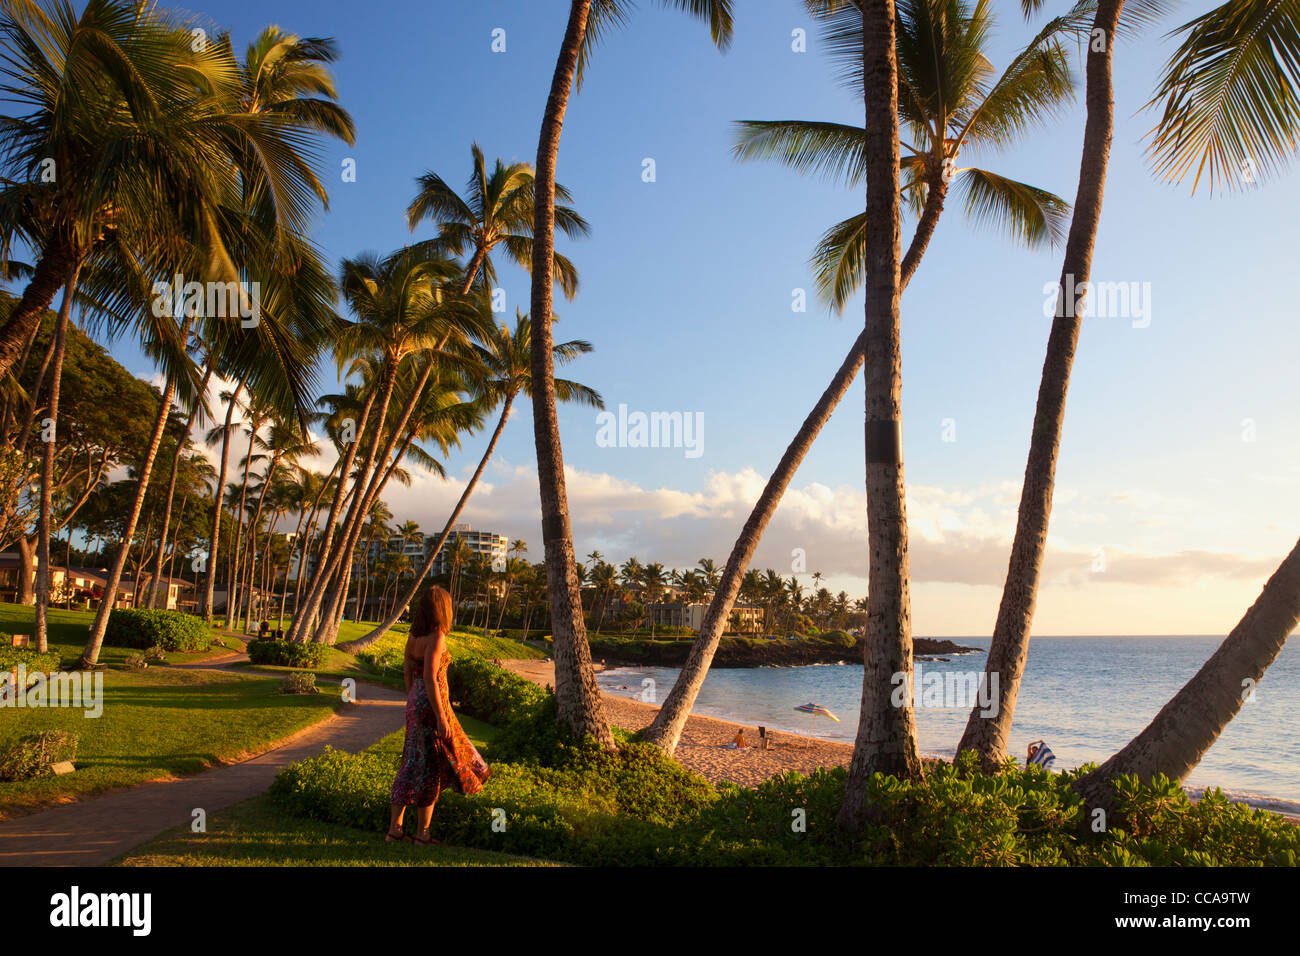 A visitor at Ulua Beach, Wailea, Maui, Hawaii. (model released) Stock Photo